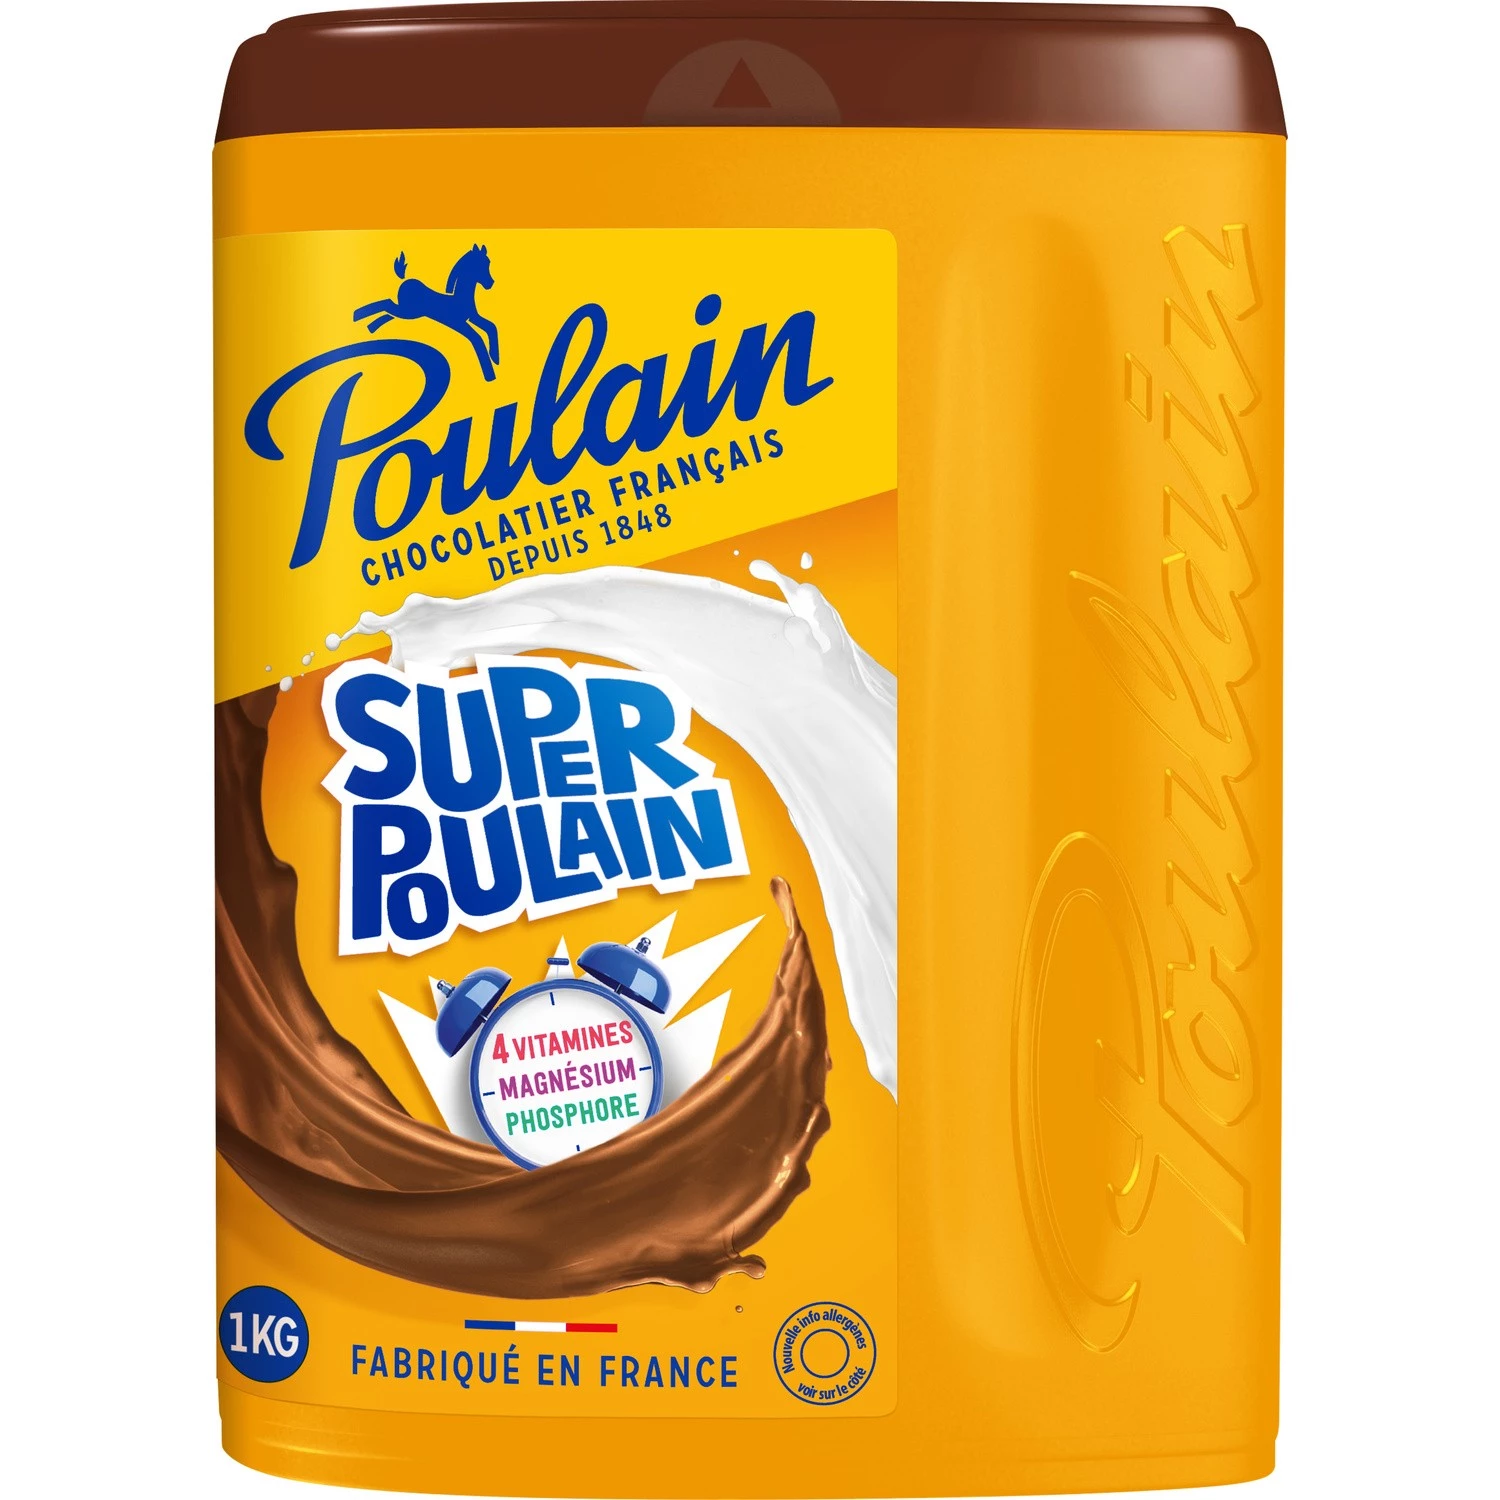 Шоколадный порошок Super Poulain 1кг. - POULAIN